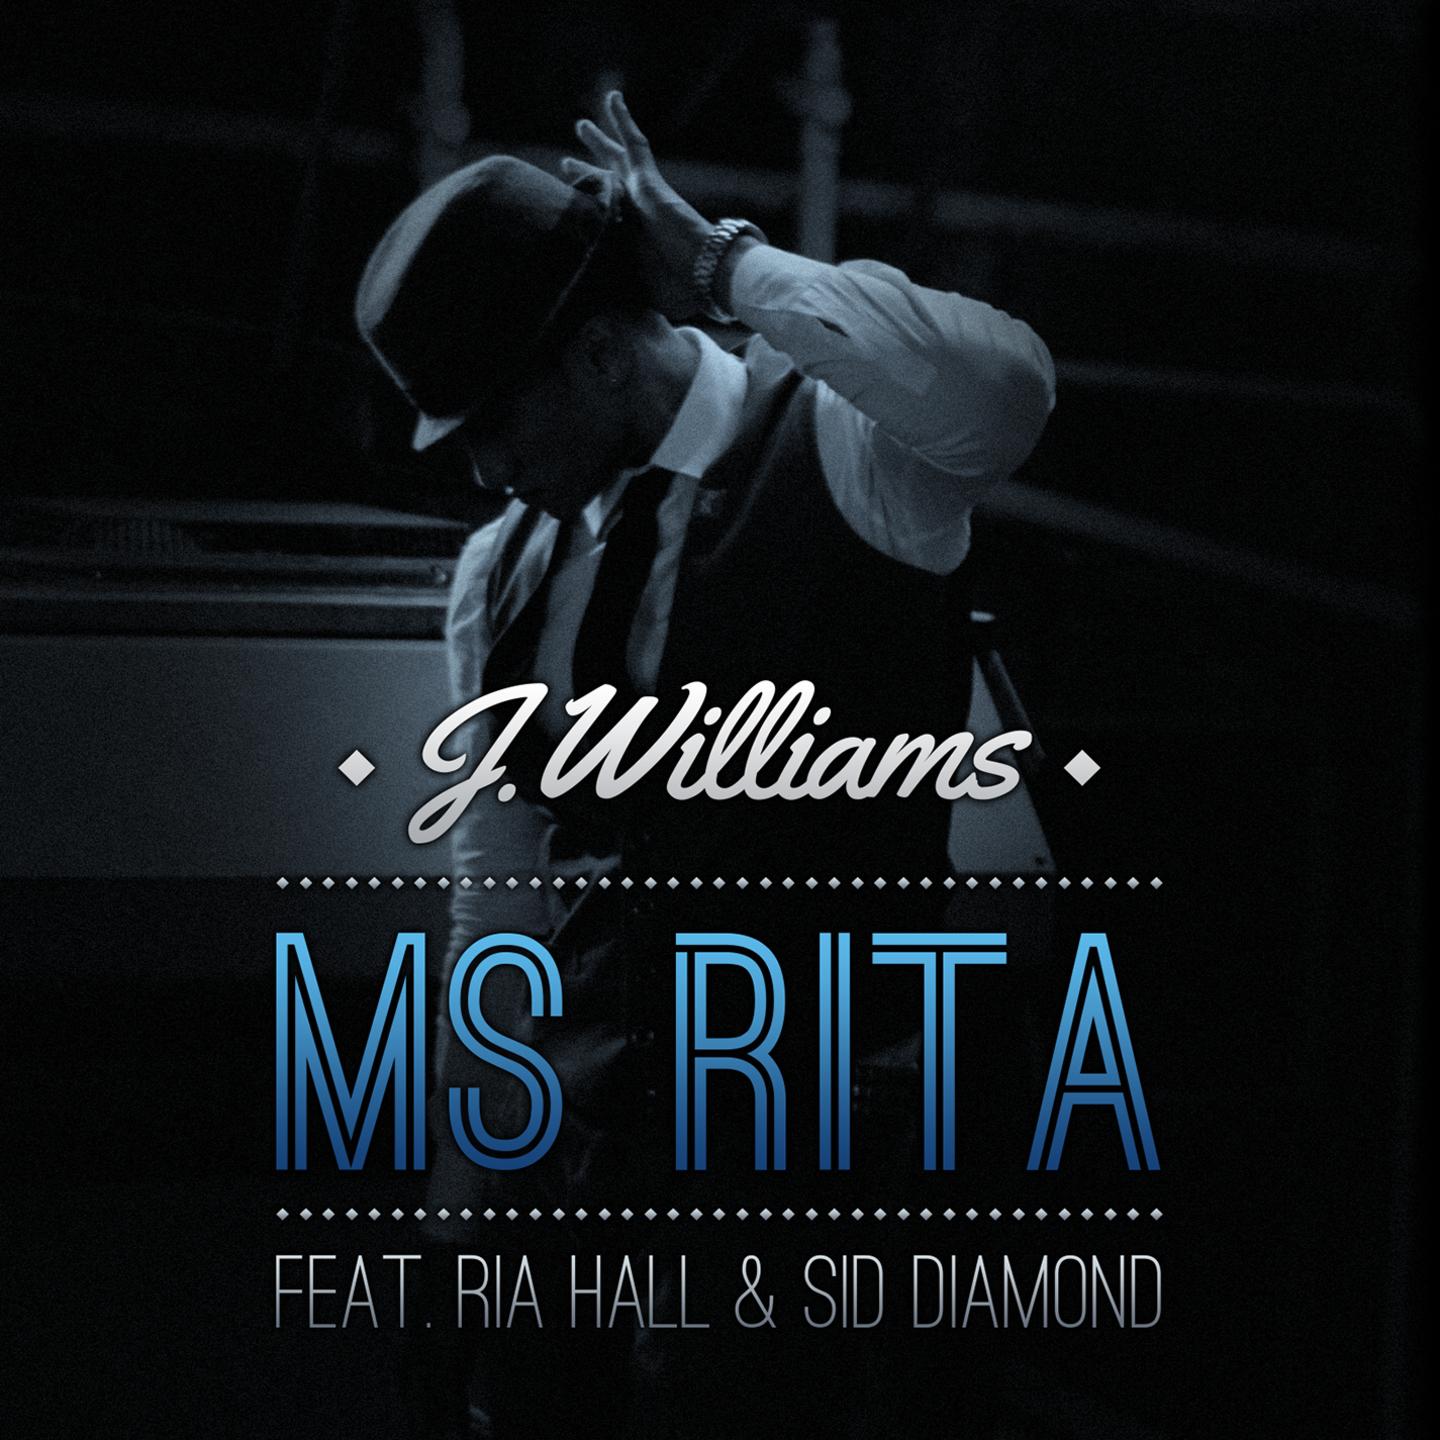 Ms Rita